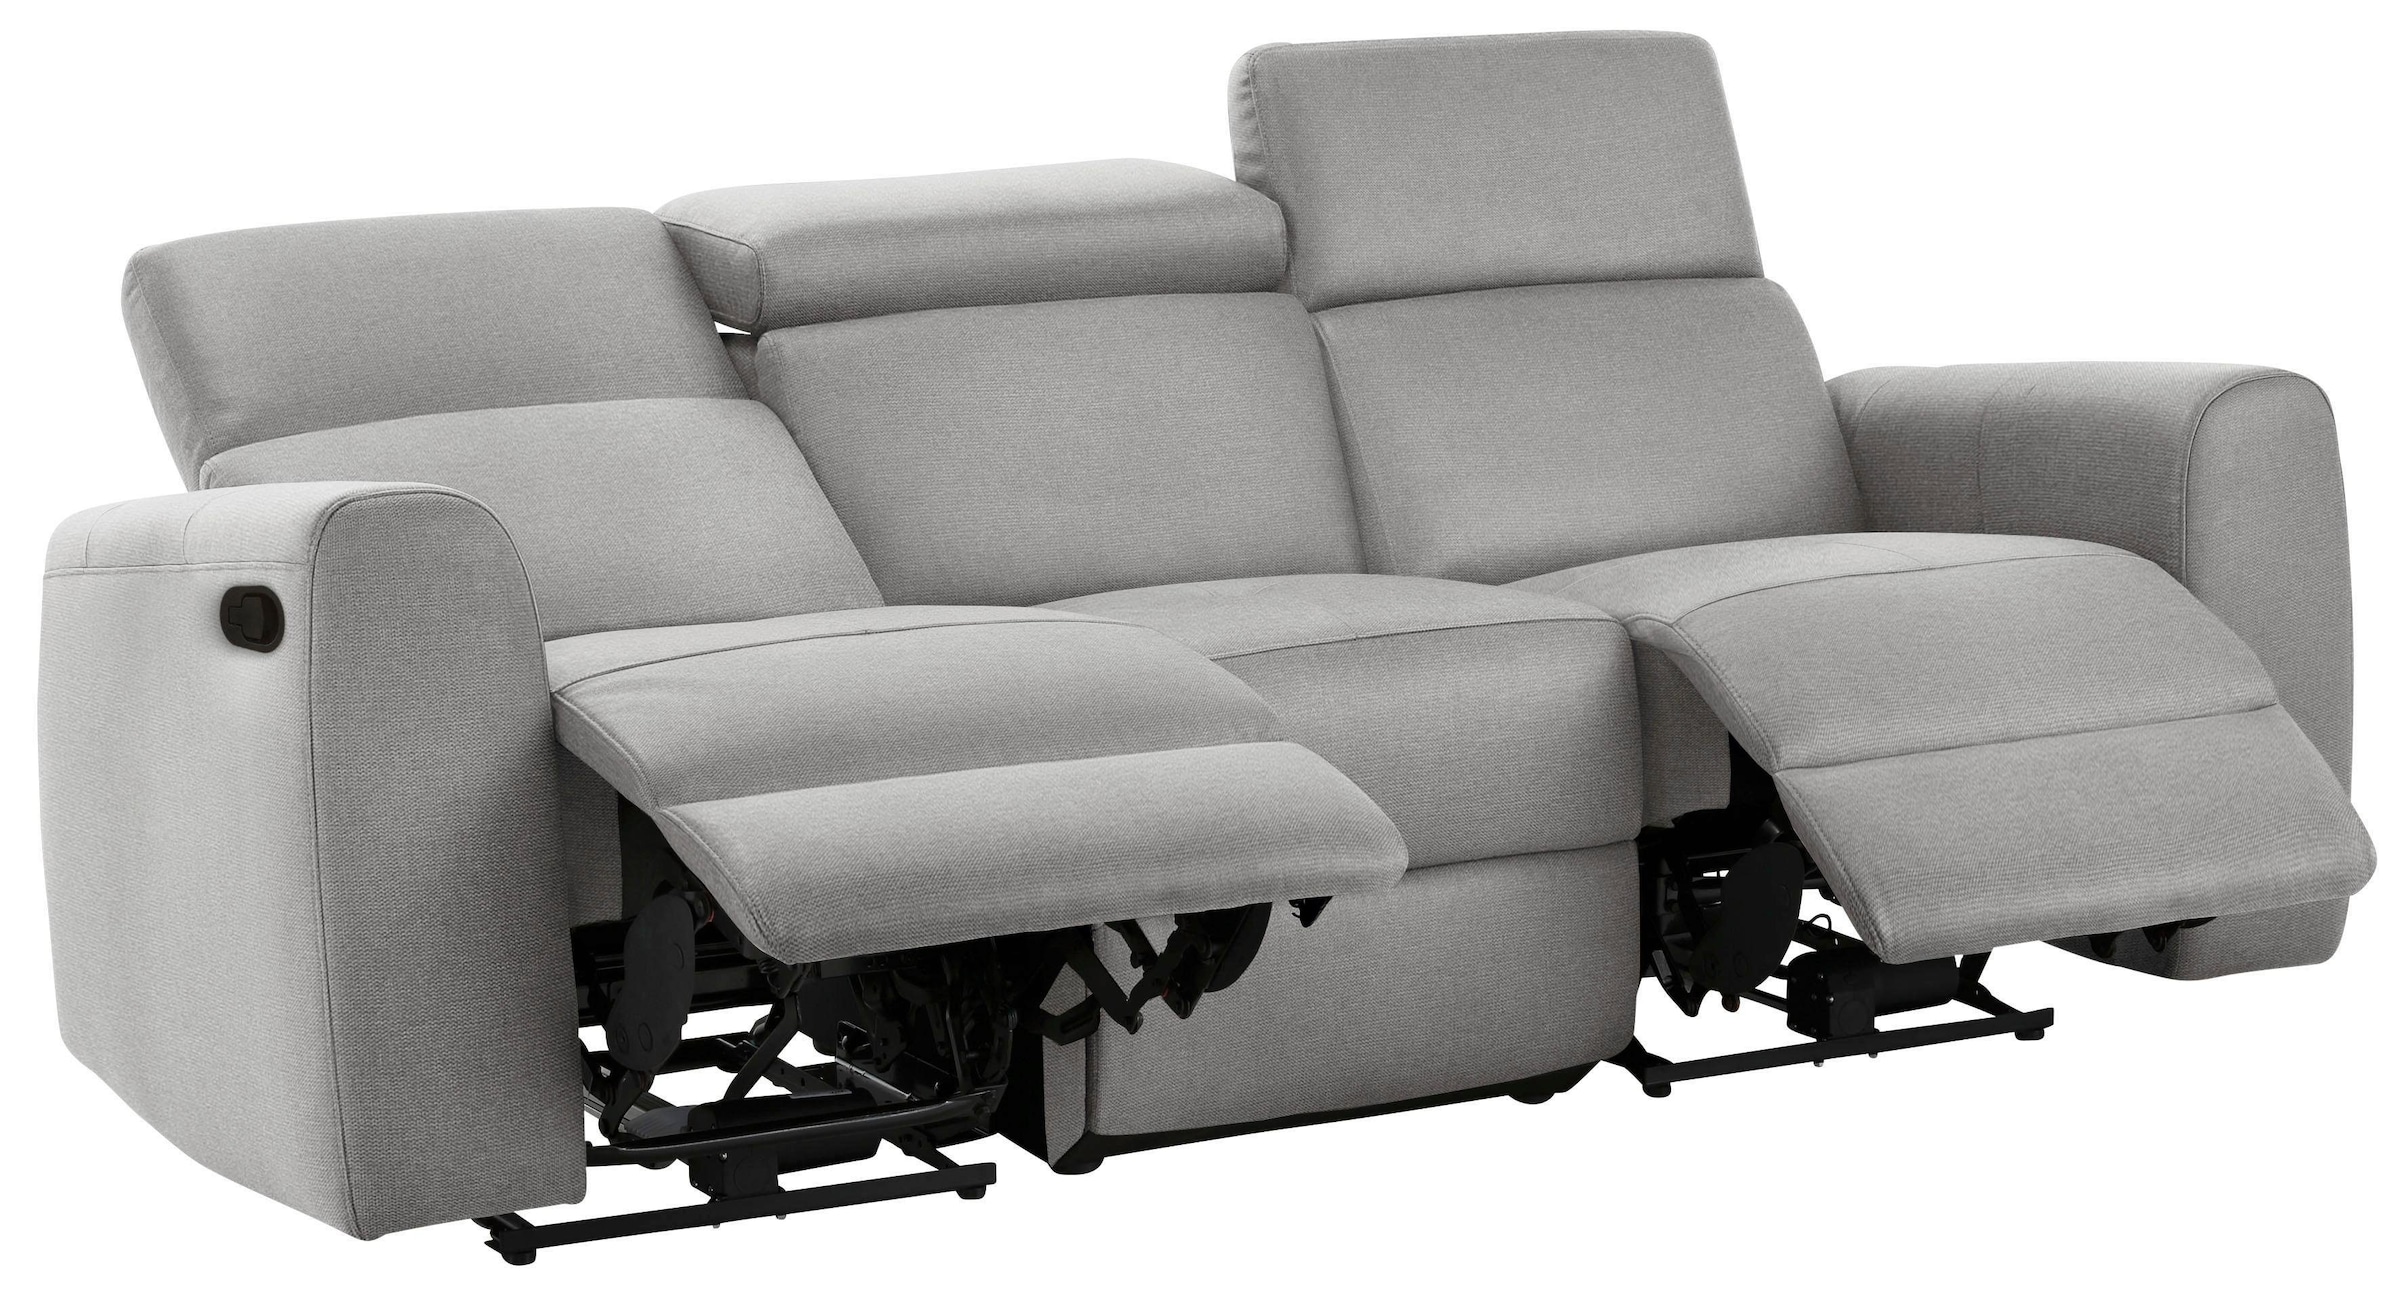 Home affaire 3-Sitzer »Sentrano«, auch mit elektrischer Funktion mit USB-Anschluss, in 4 Bezugsvarianten